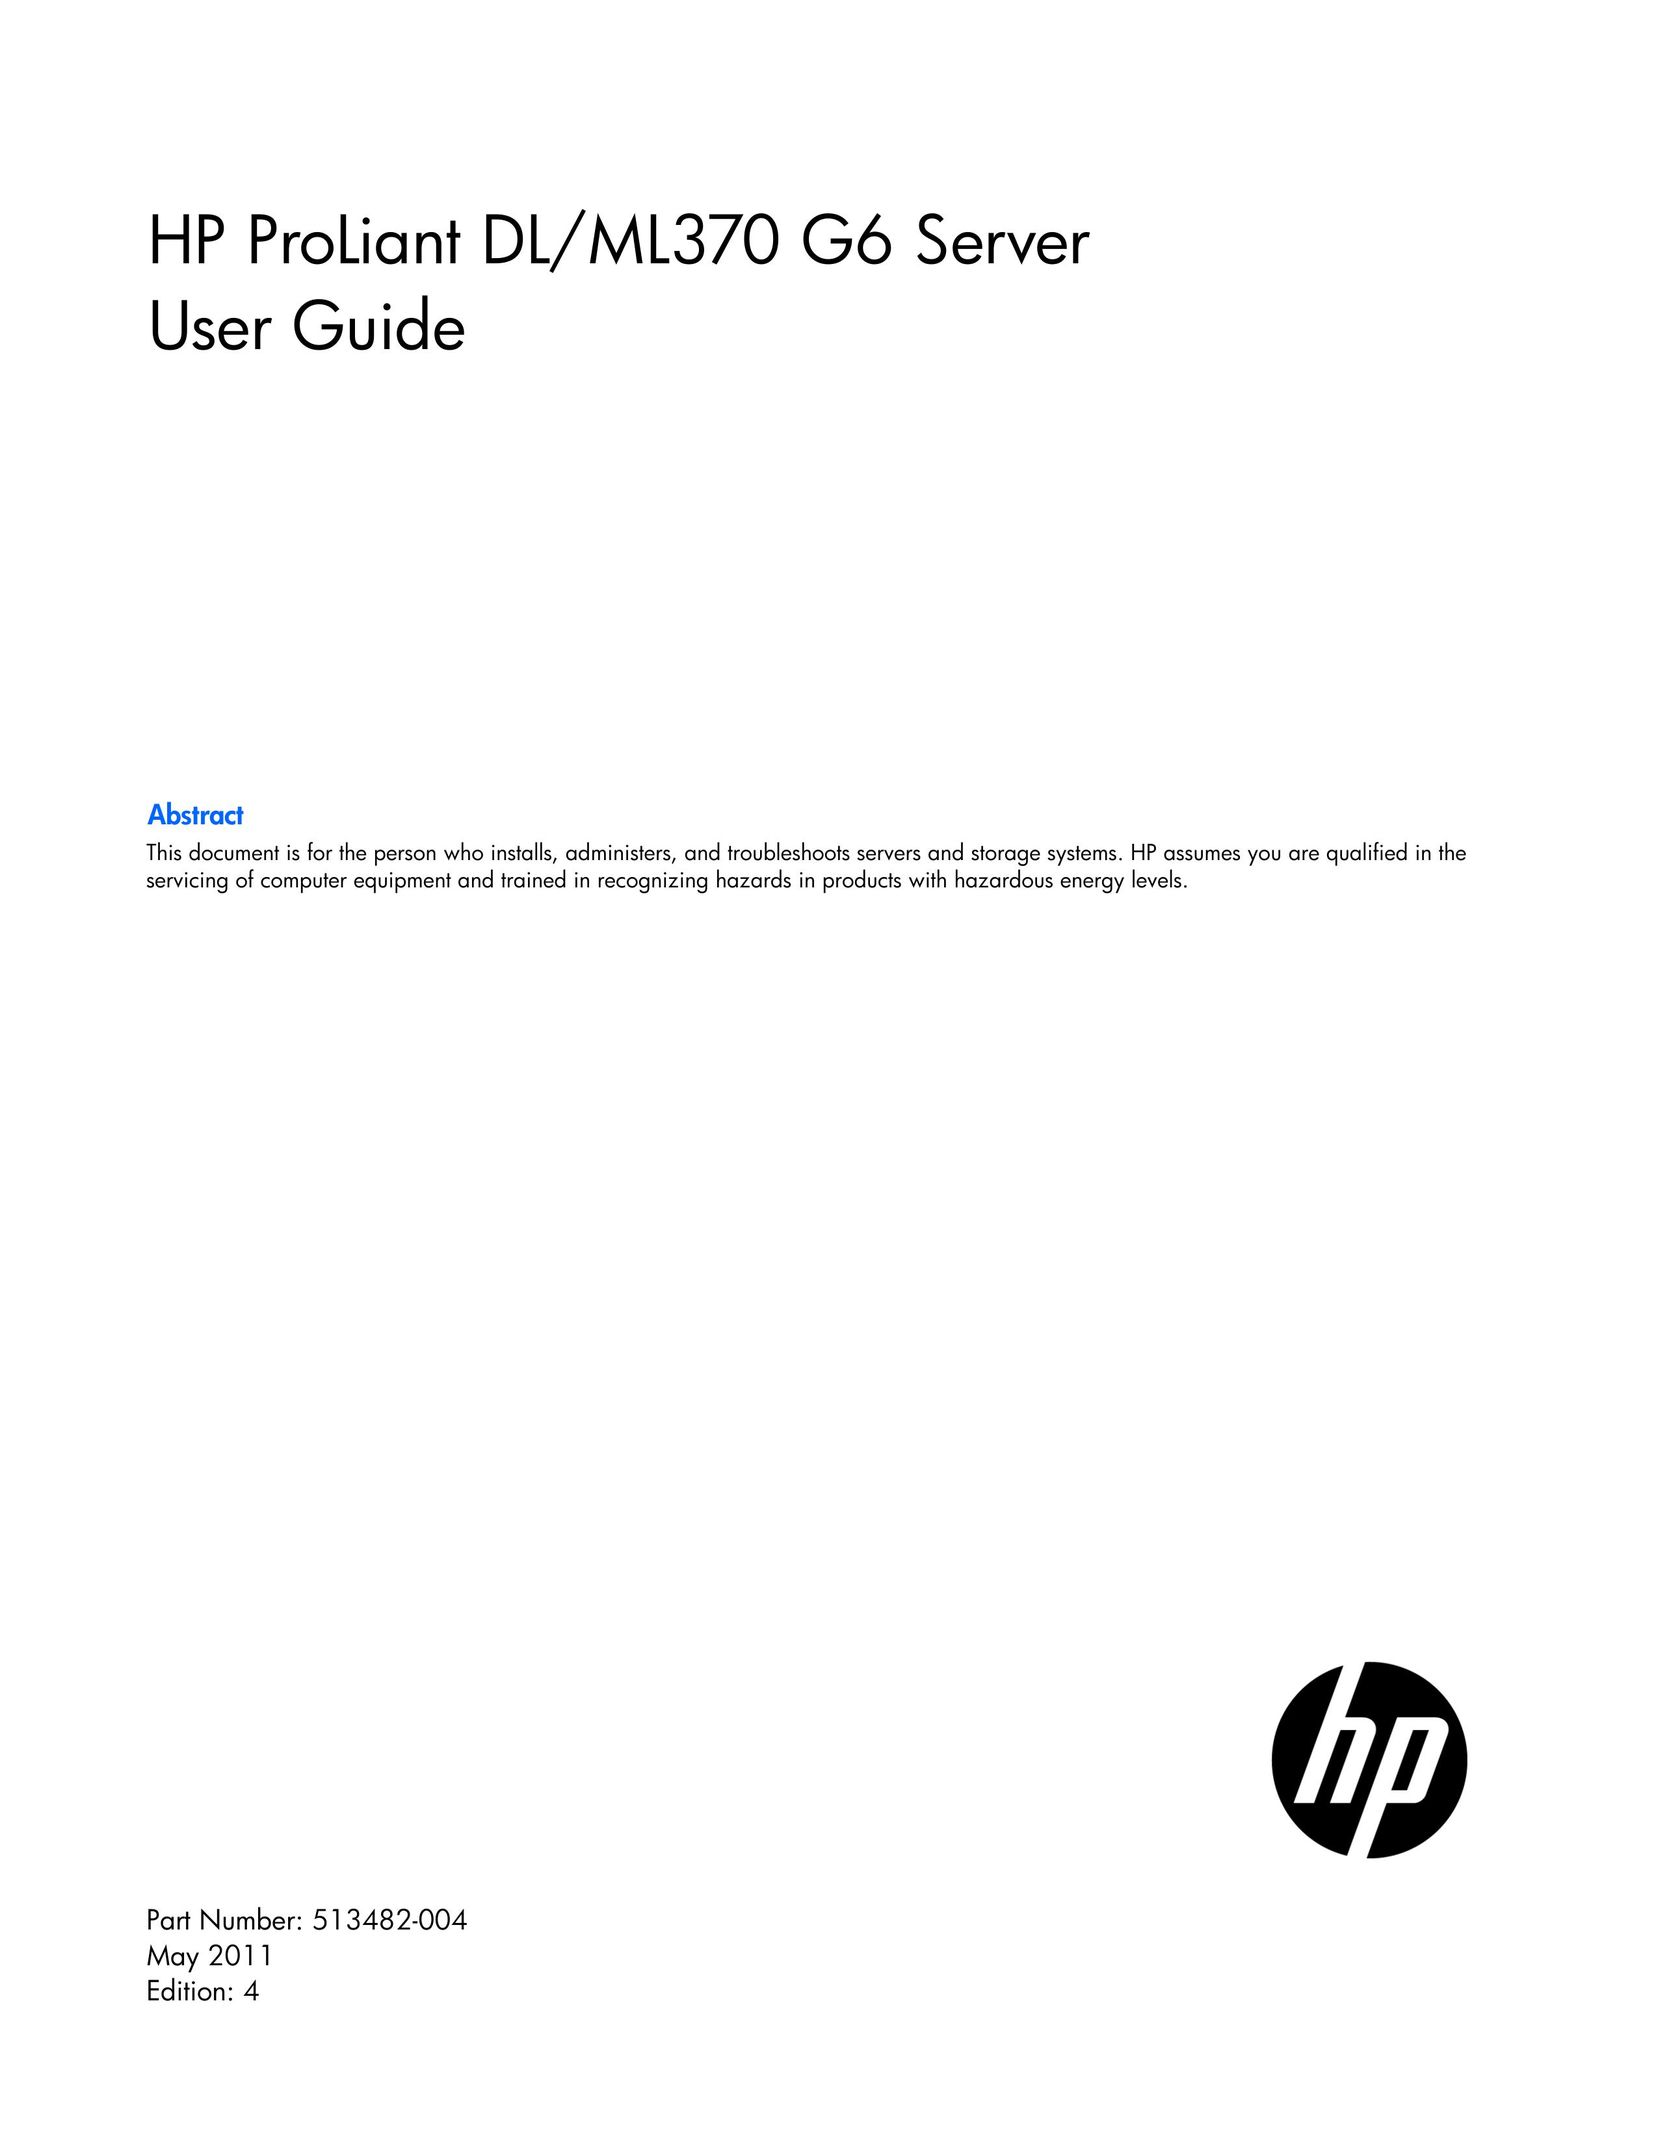 HP (Hewlett-Packard) 595166-001 Server User Manual